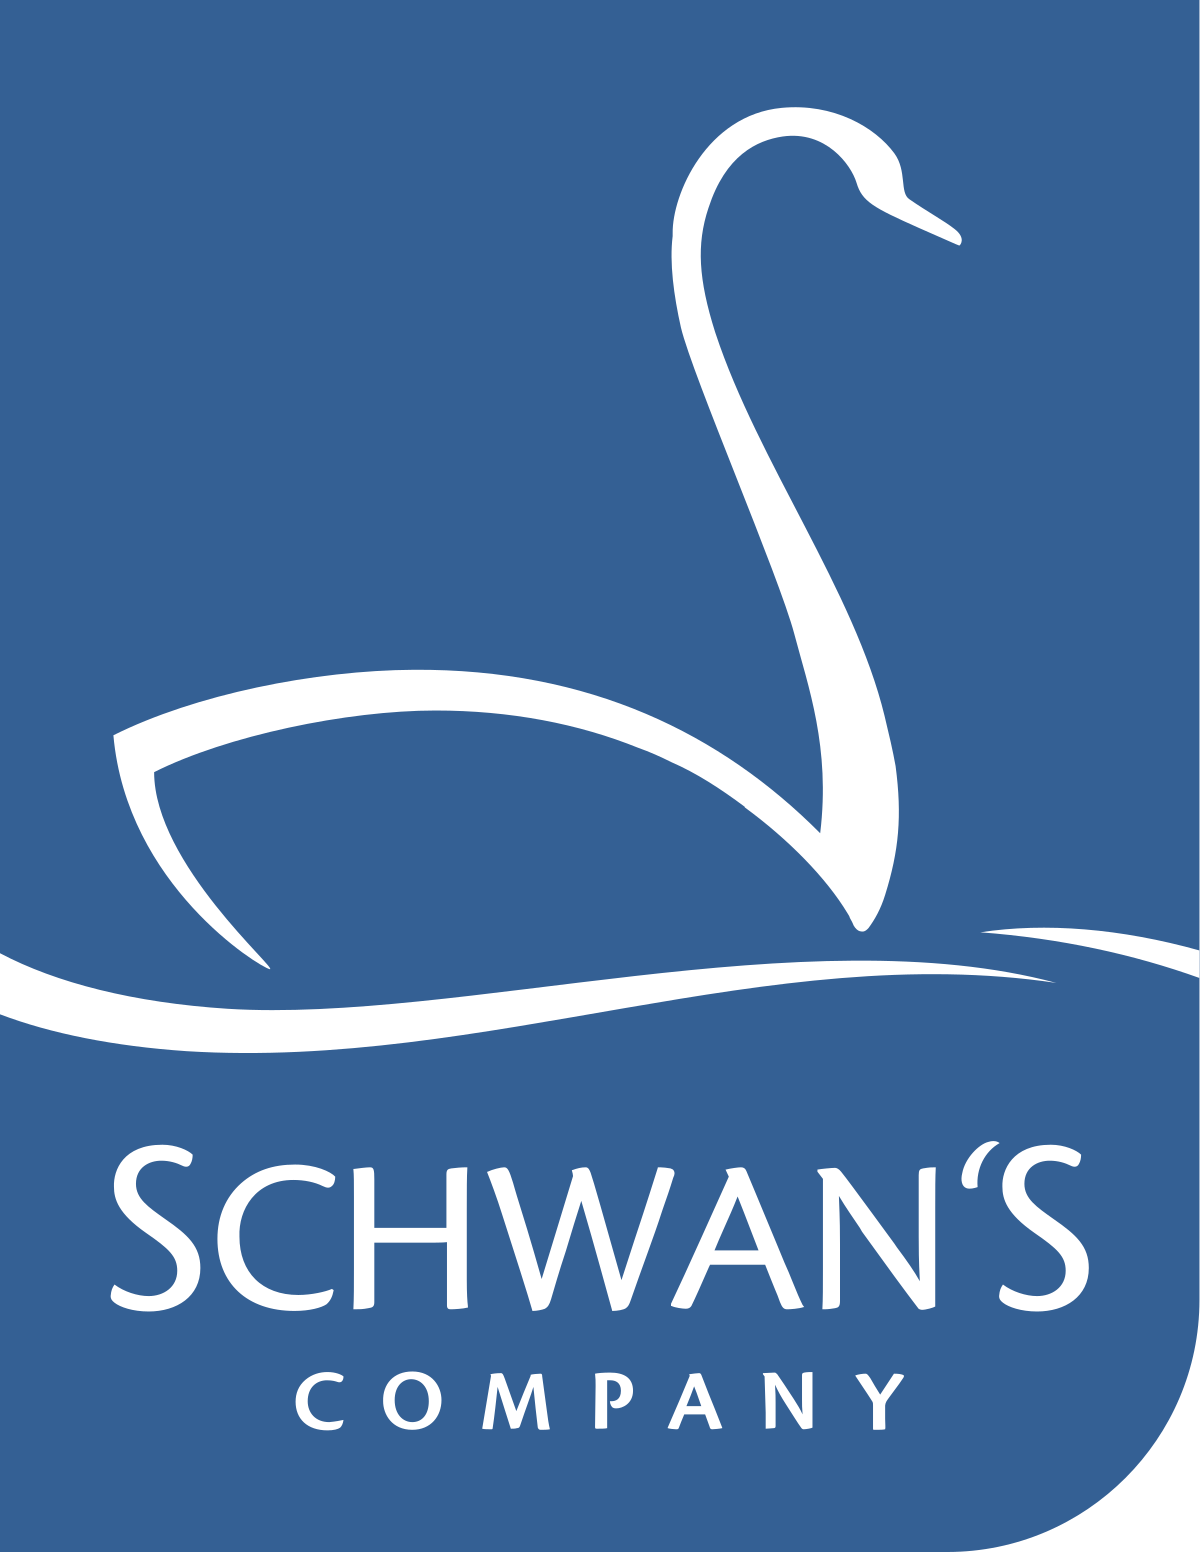 Schwan's Company logo